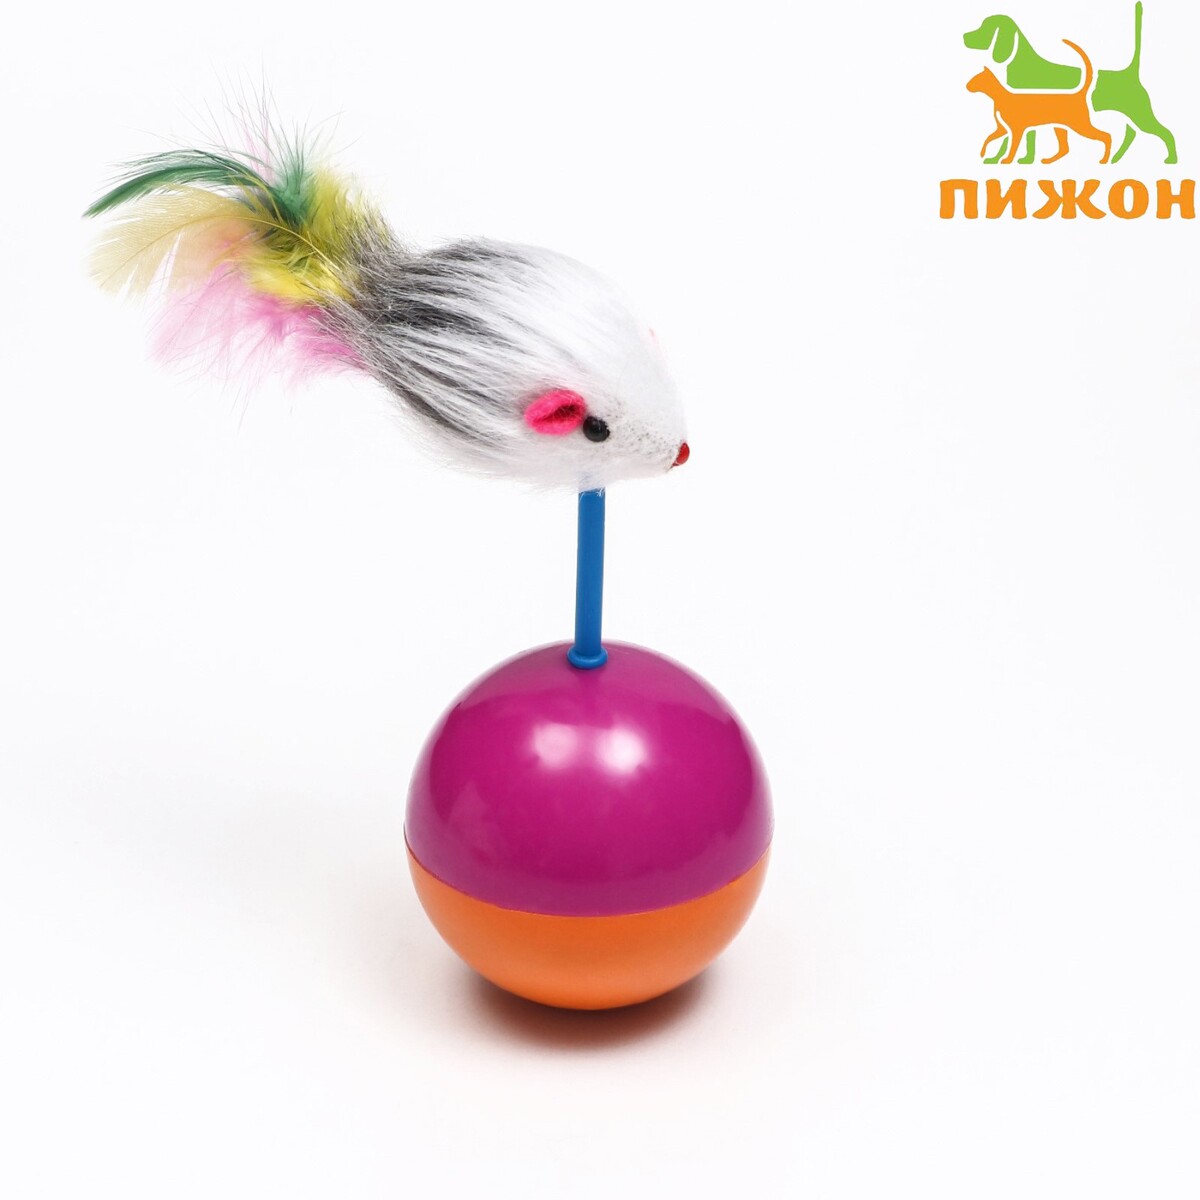 Мышь-неваляшка из натурального меха на шаре, 11 х 5 см фиолетовый/оранжевый, Пижон